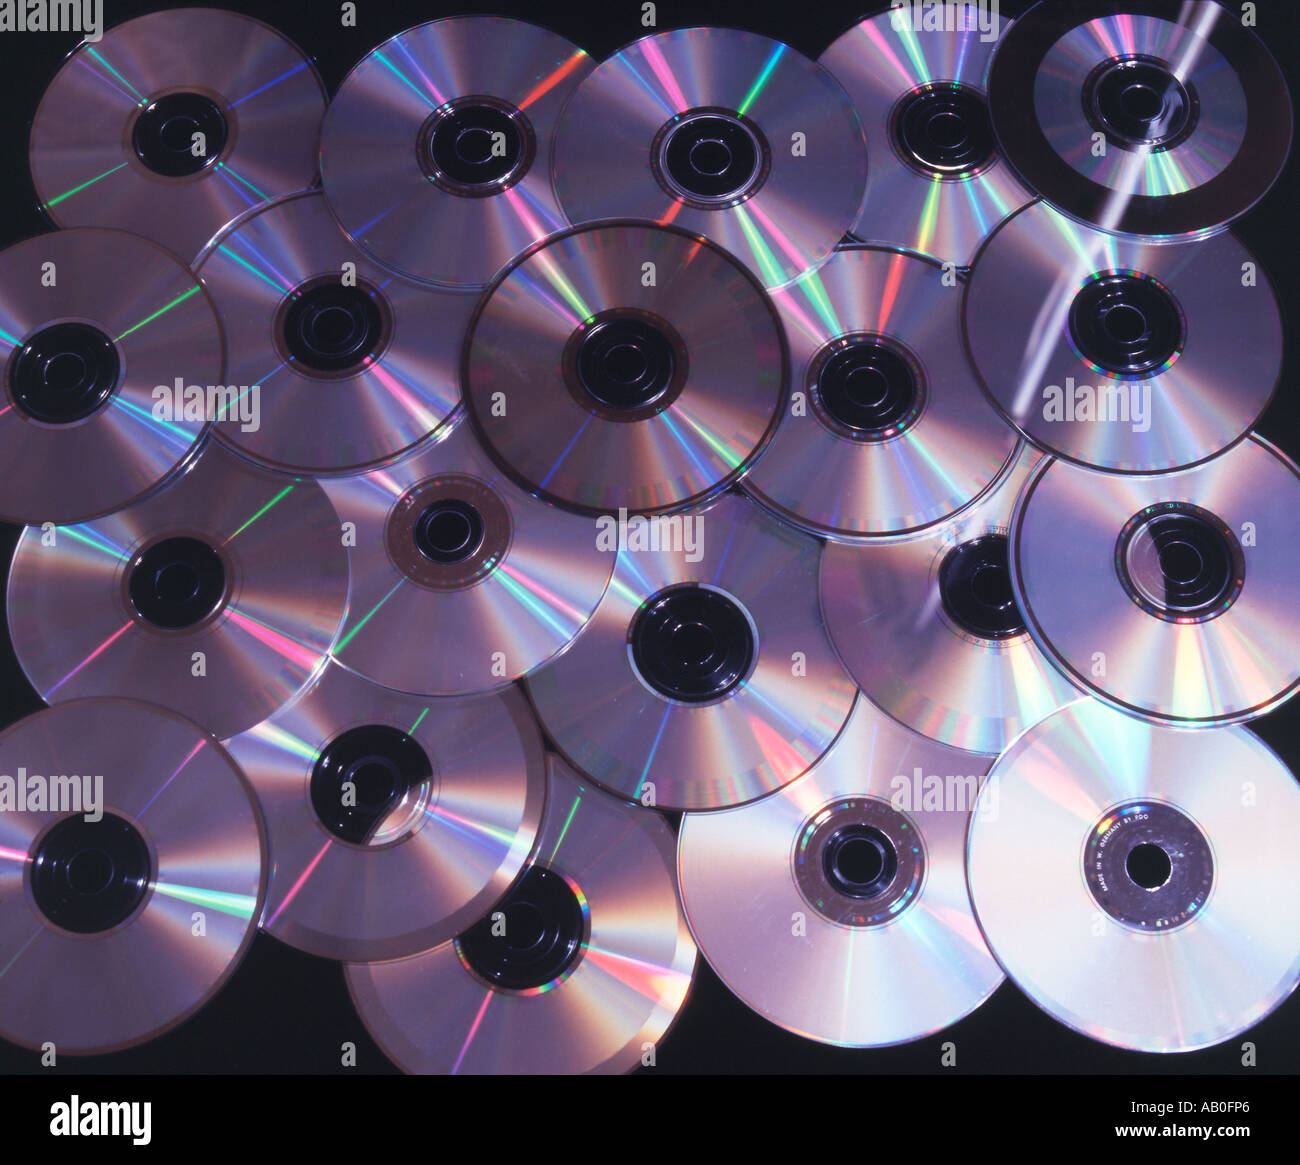 Compact discs Stock Photo